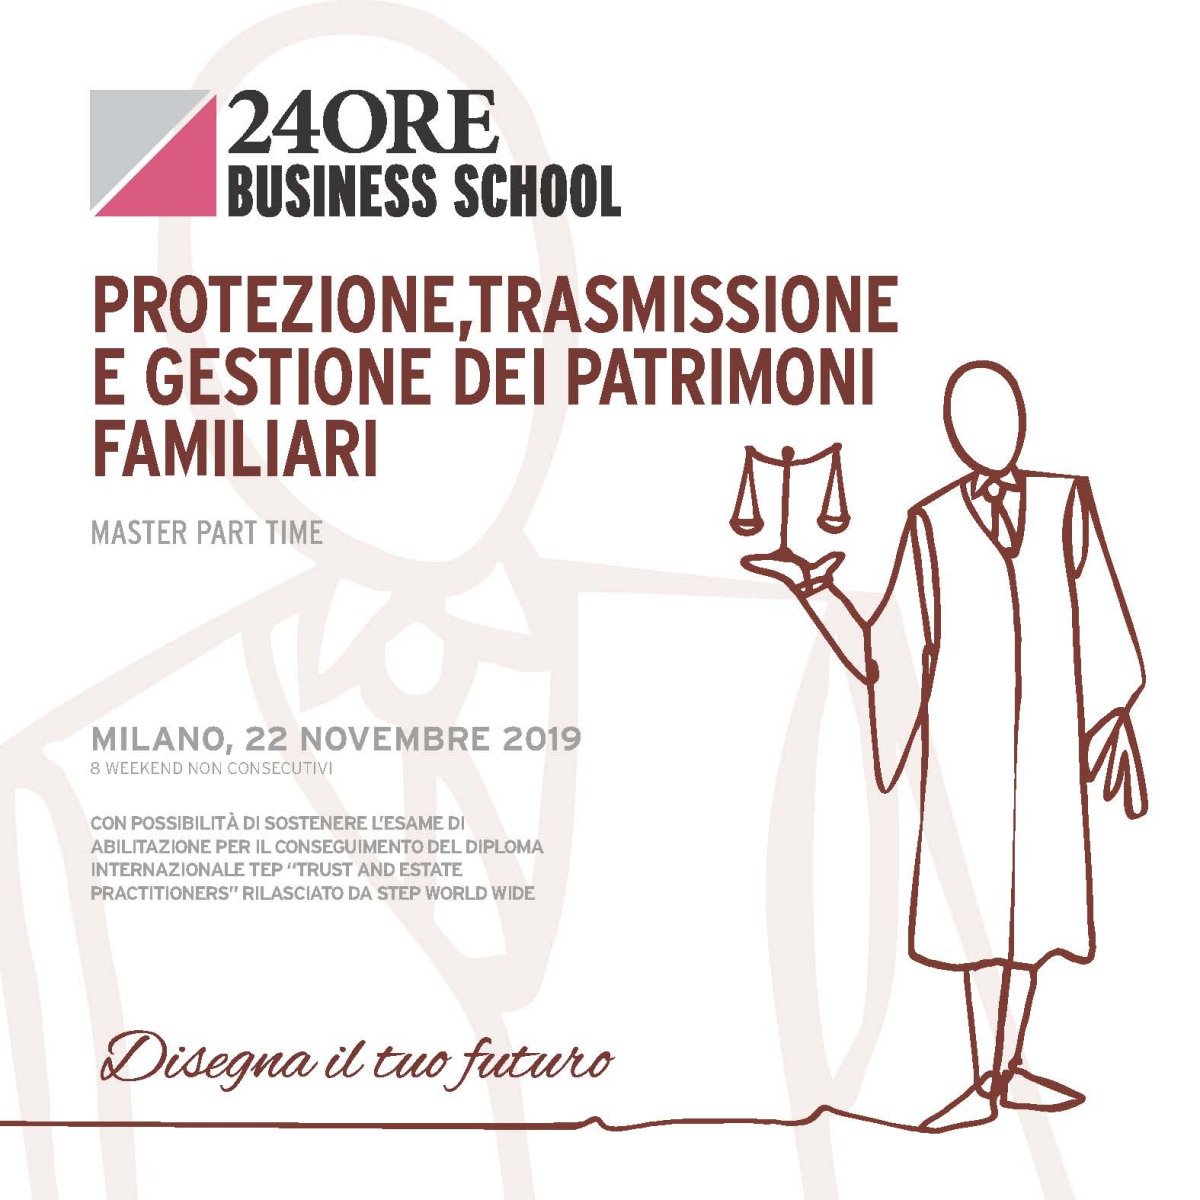 Gianmarco Di Stasio and Annalisa Domizi speaker at "Protezione trasmissione e gestione dei patrimoni familiari", a master organized by 24ORE Business School